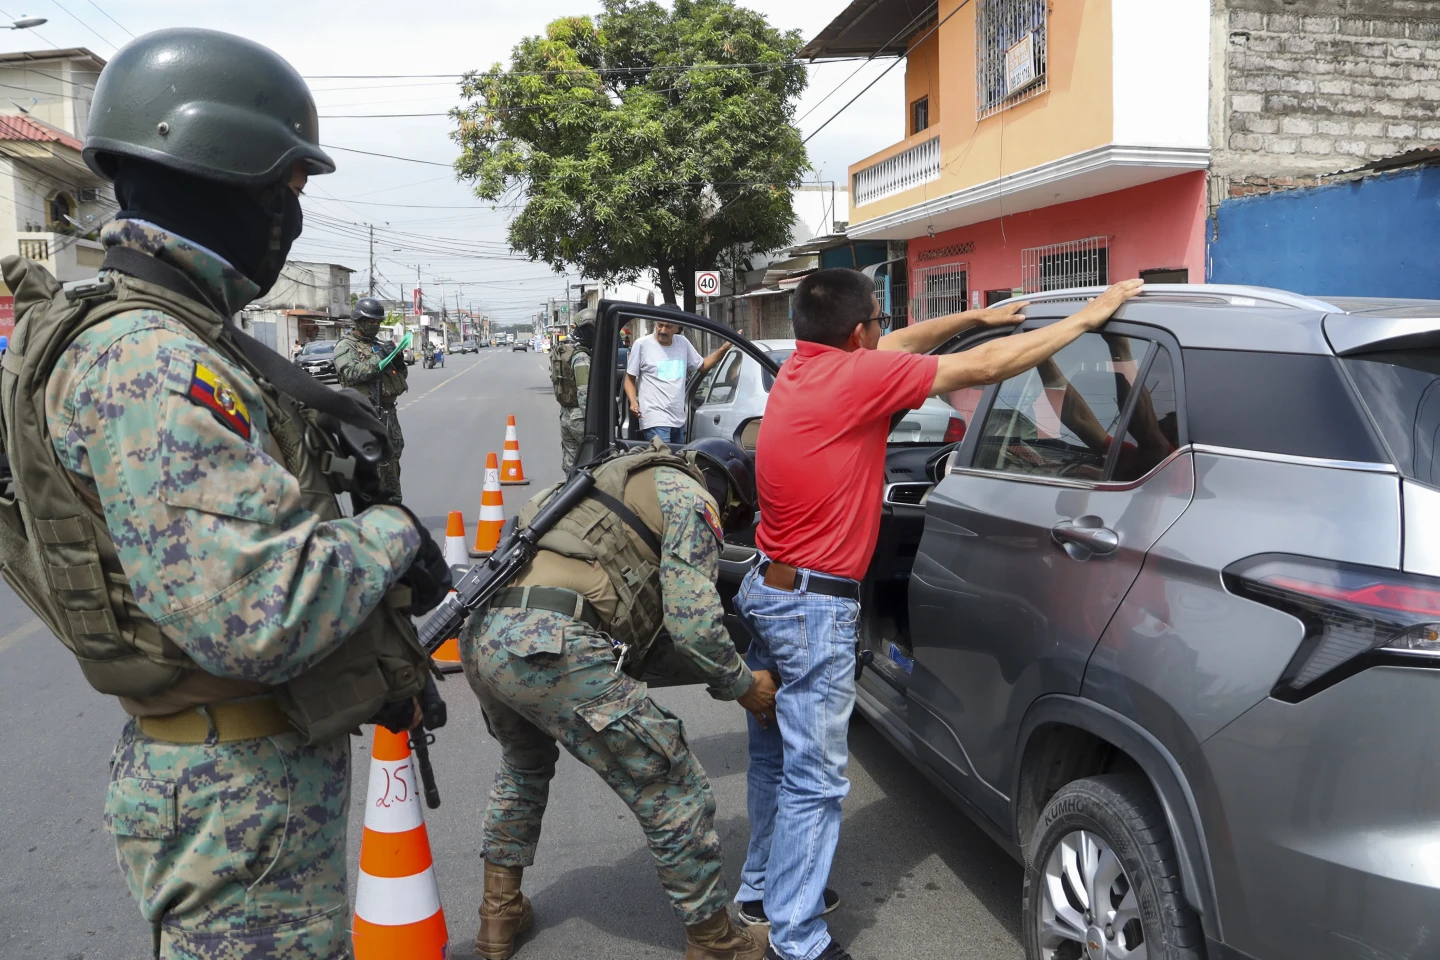 "¡Auge del crimen en Ecuador! Descubre cómo la violencia y el caos están transformando el país en tiempo récord."